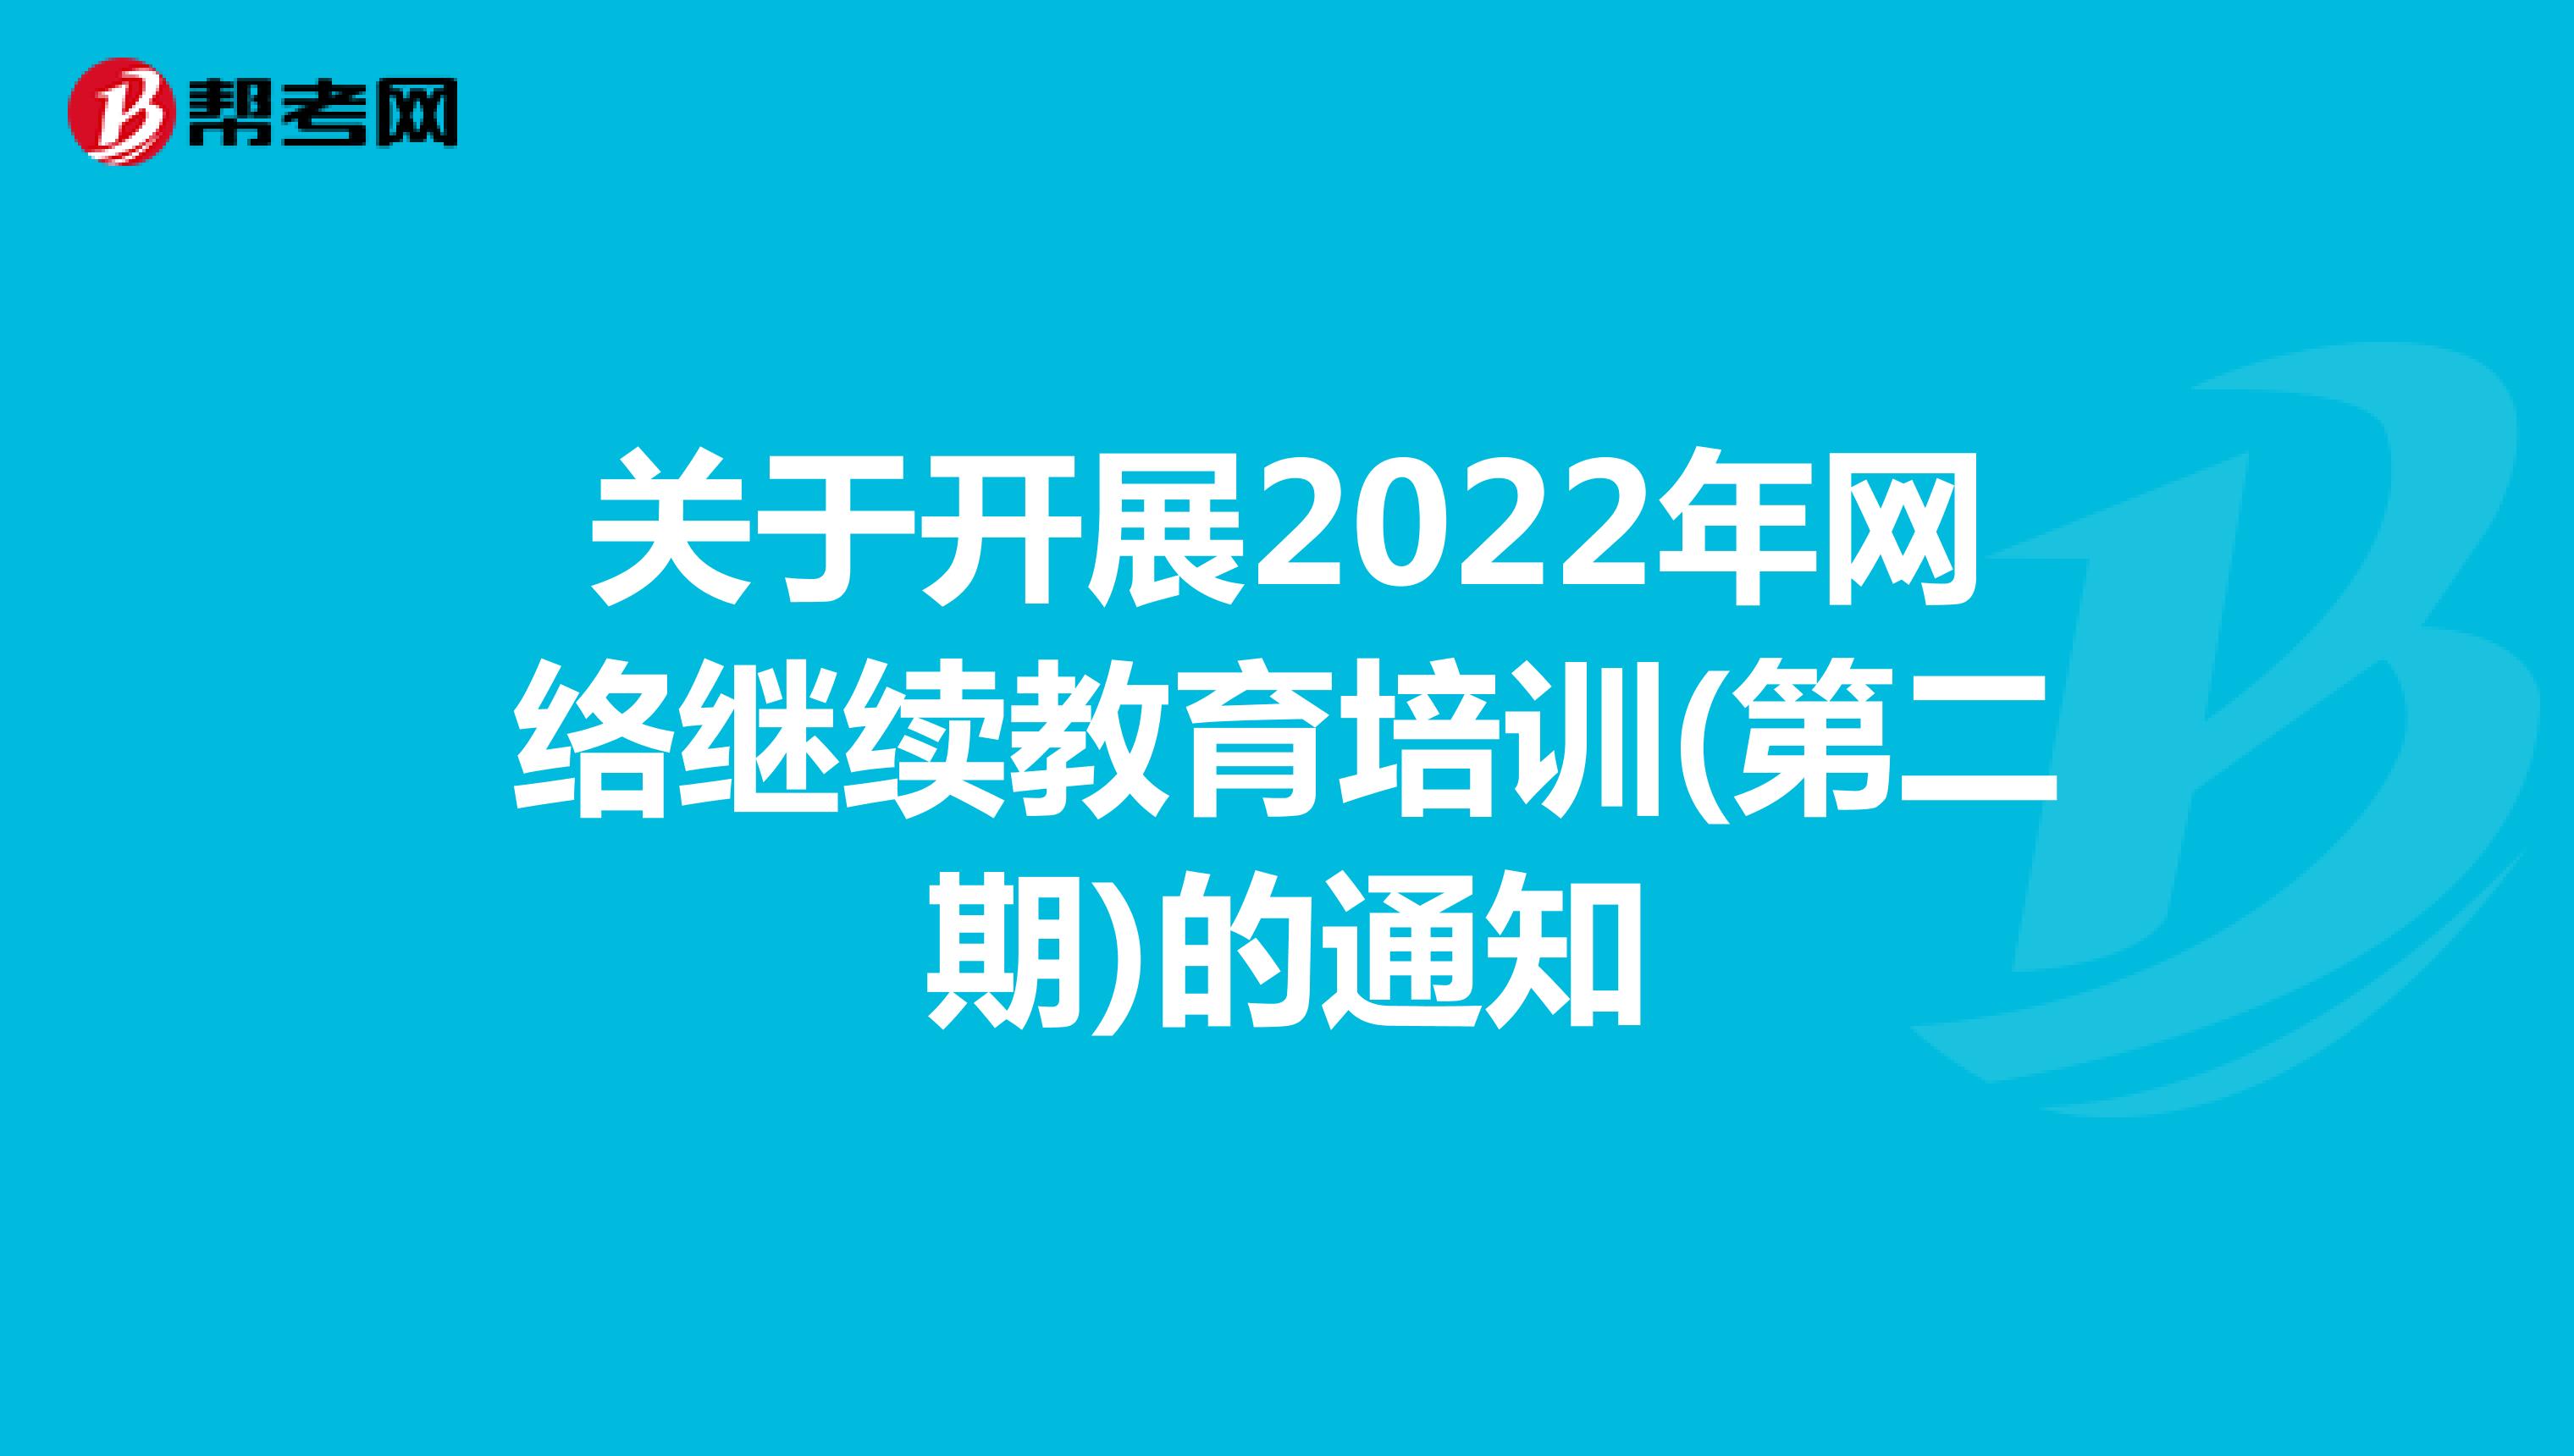 关于开展2022年网络继续教育培训(第二期)的通知